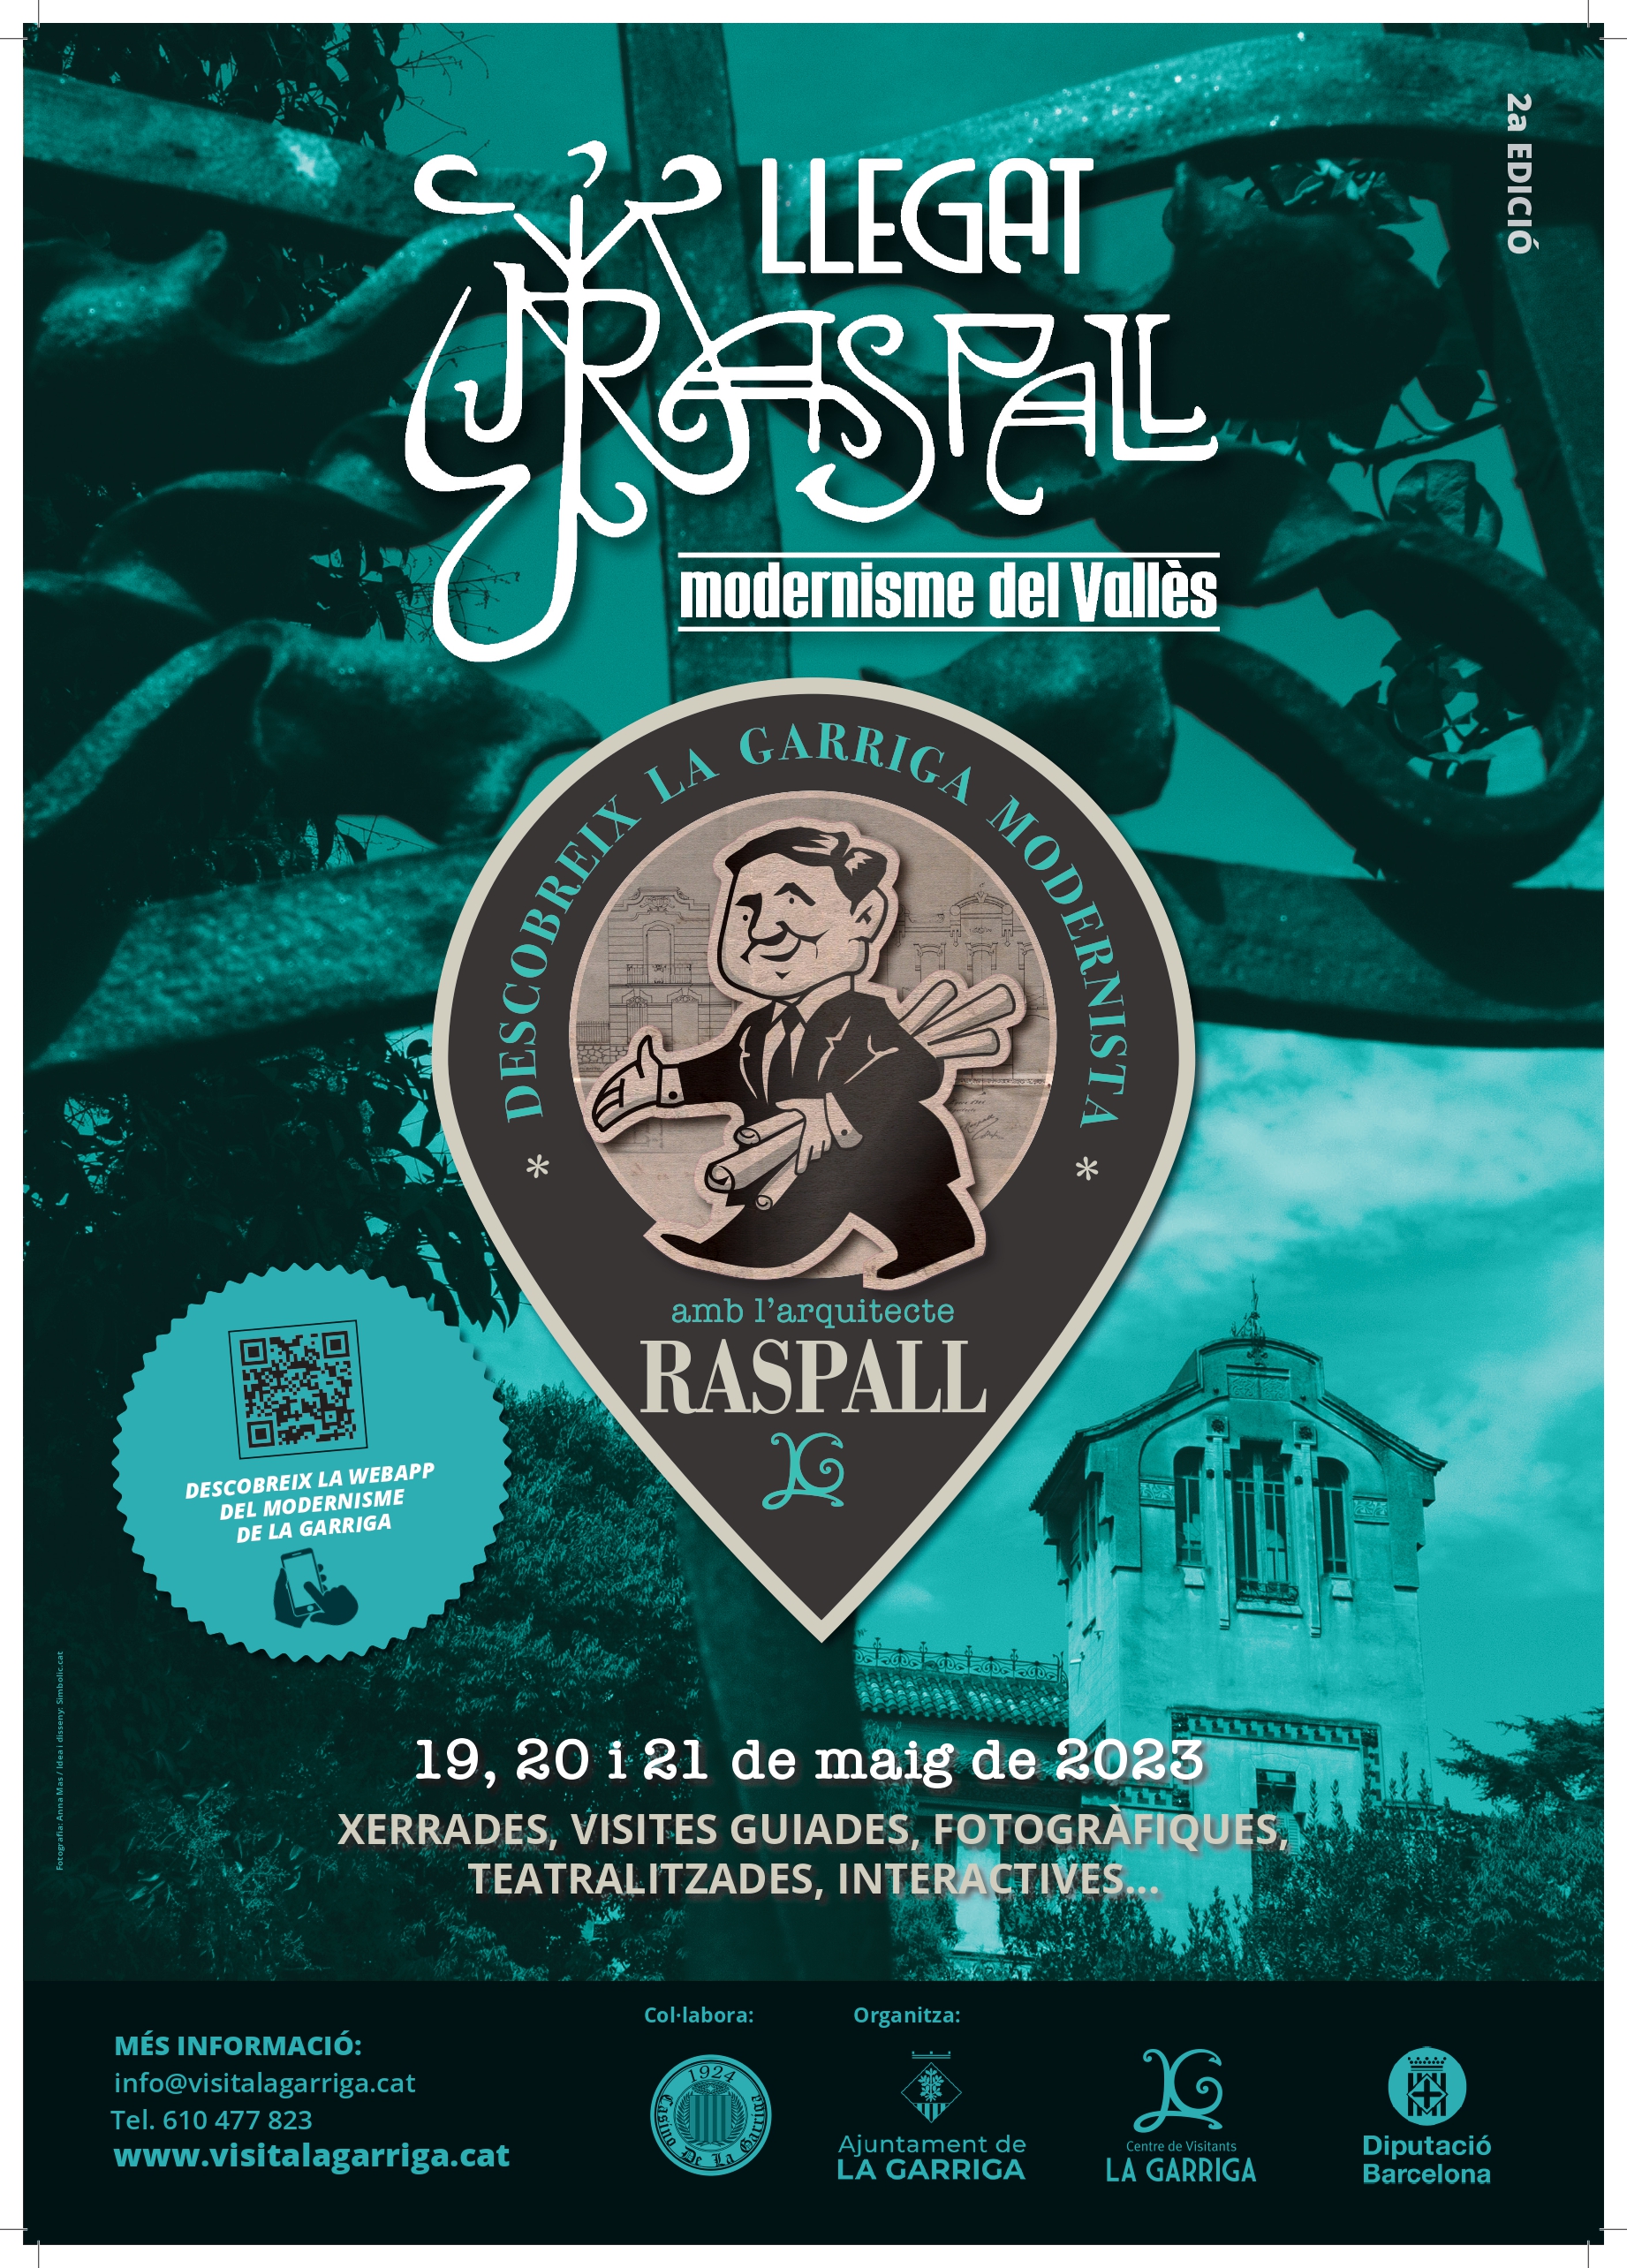 Jornades Llegat Raspall: ITINERARI GUIAT Tot Raspall 